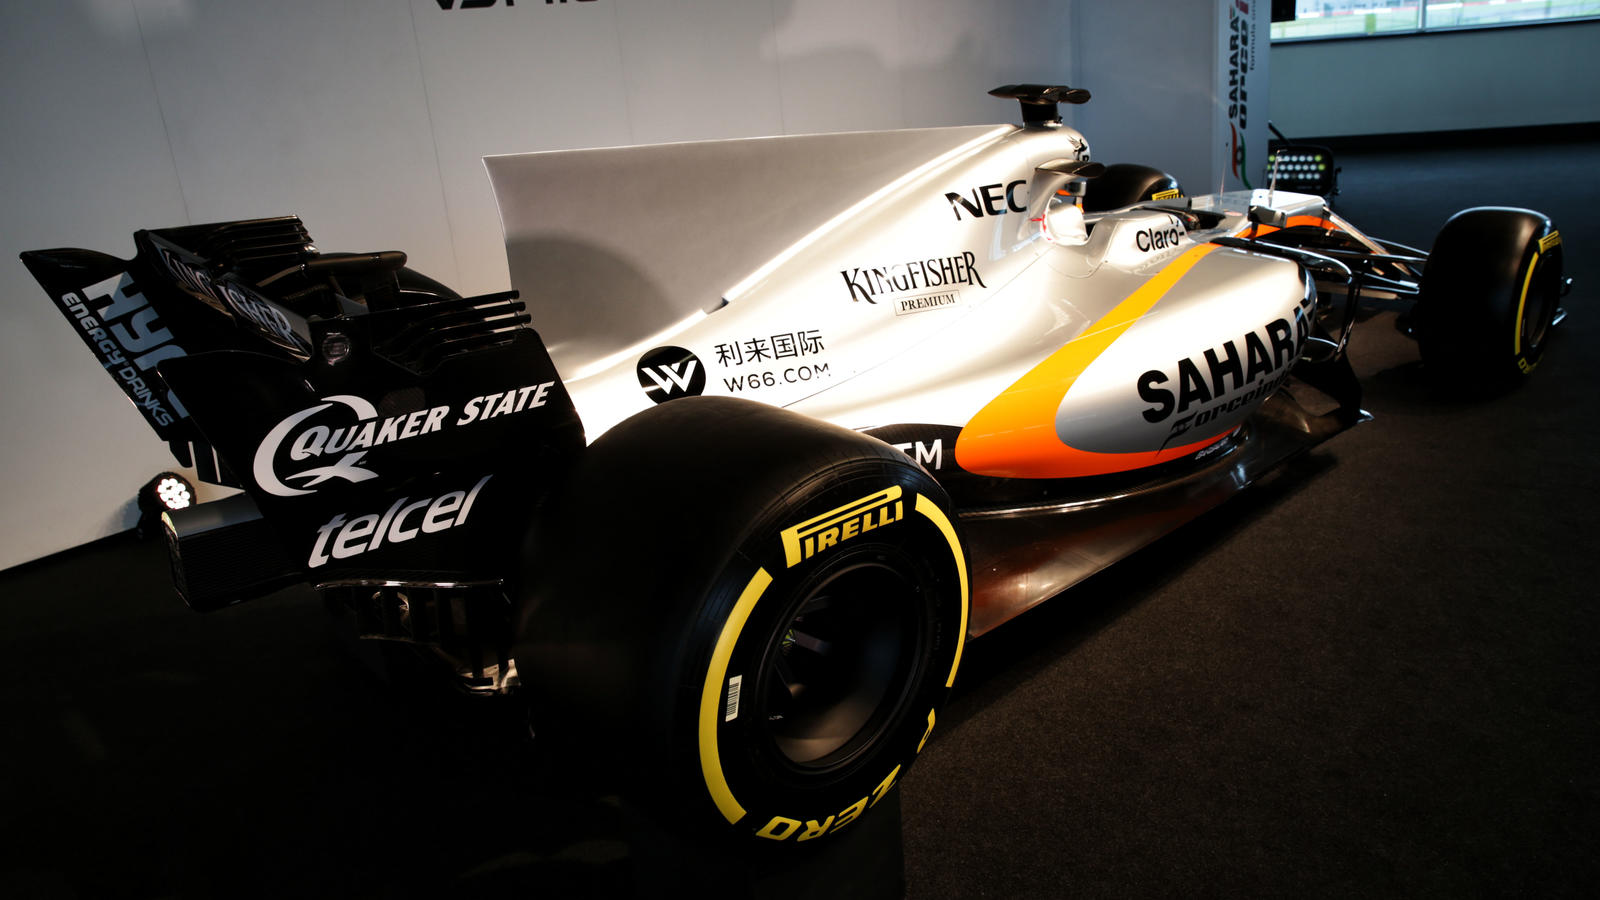 Formel Force India Stellt Neues Auto Vjm10 F R Die